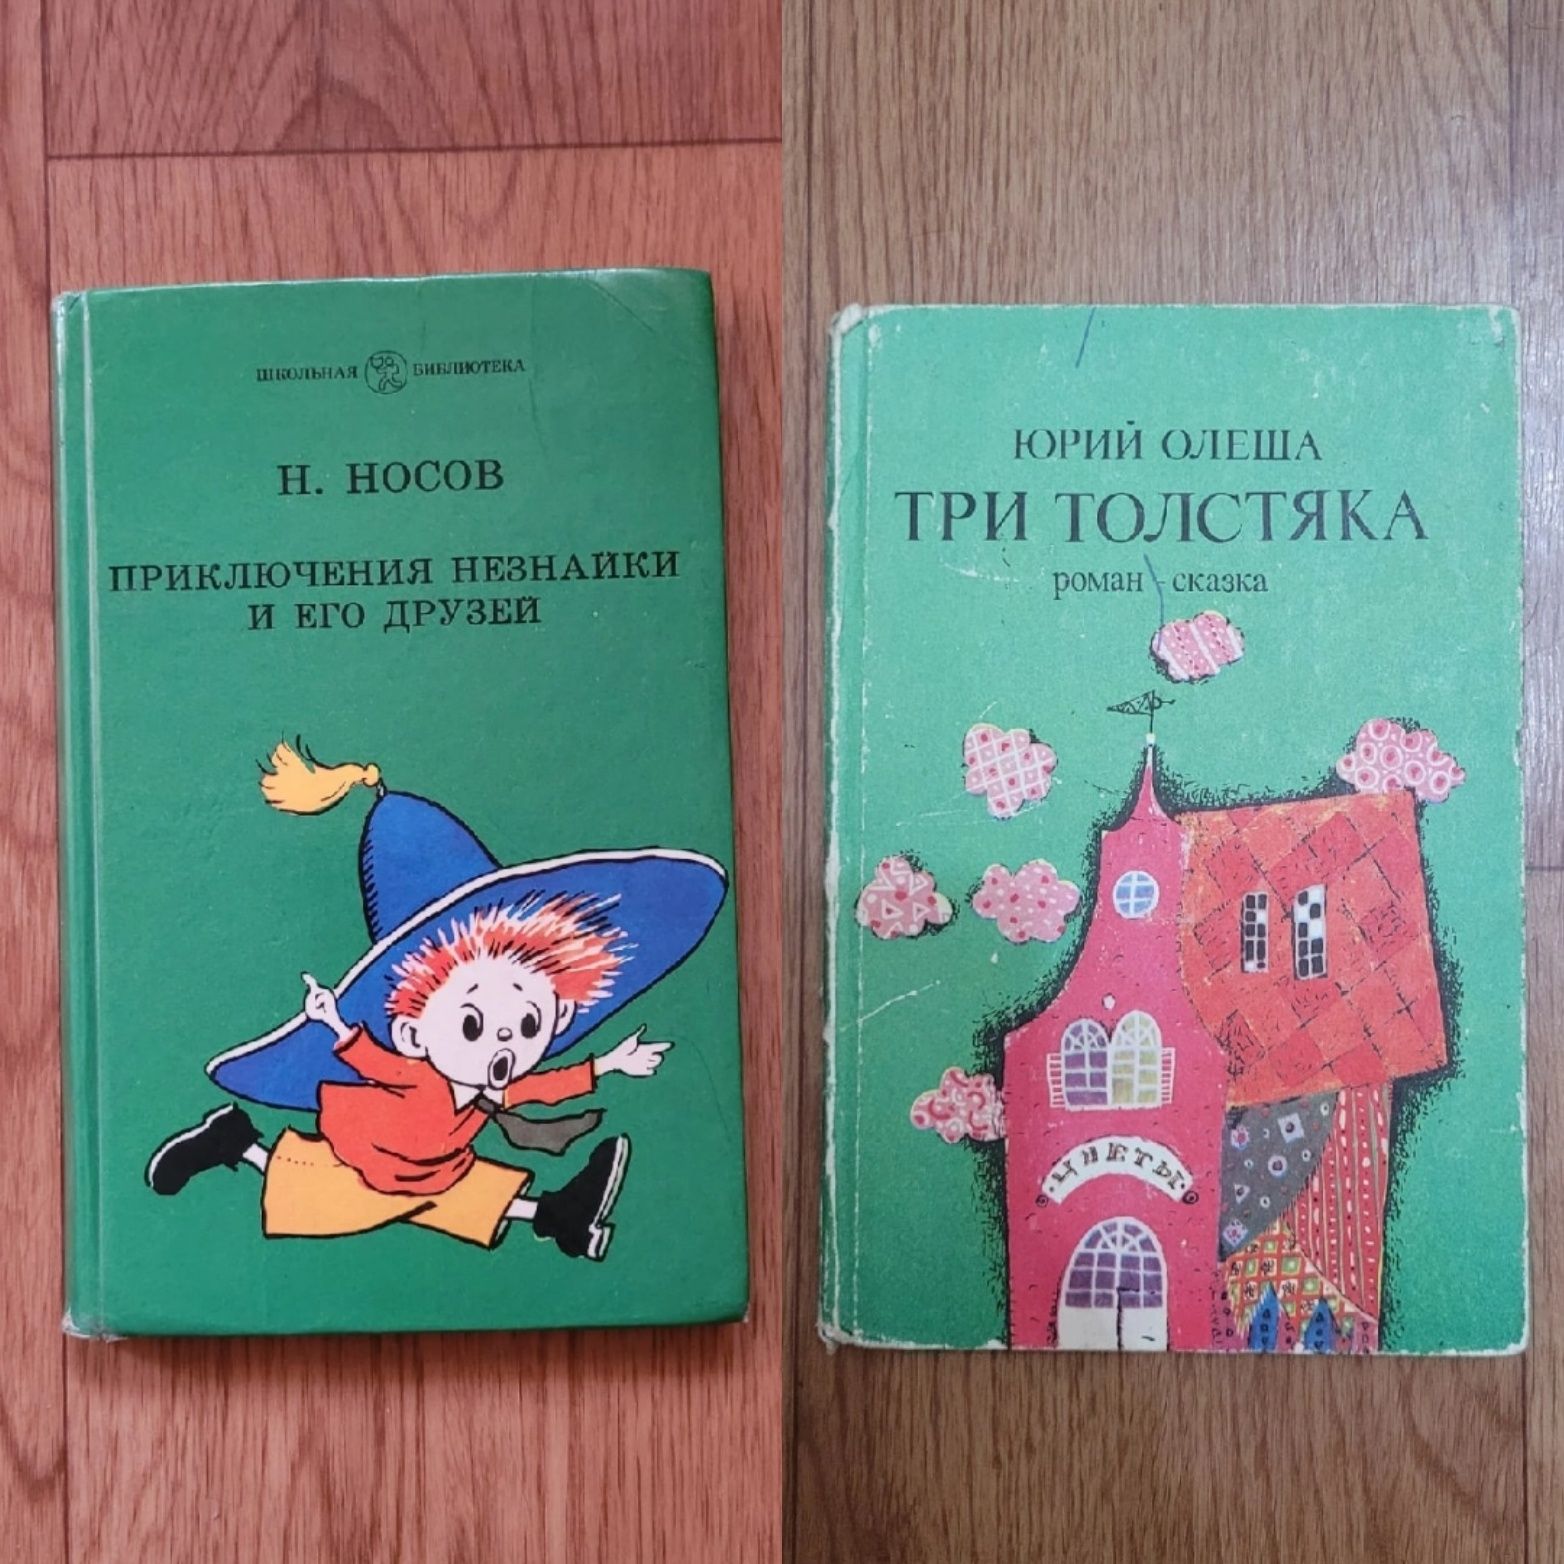 Книги детские времён СССР